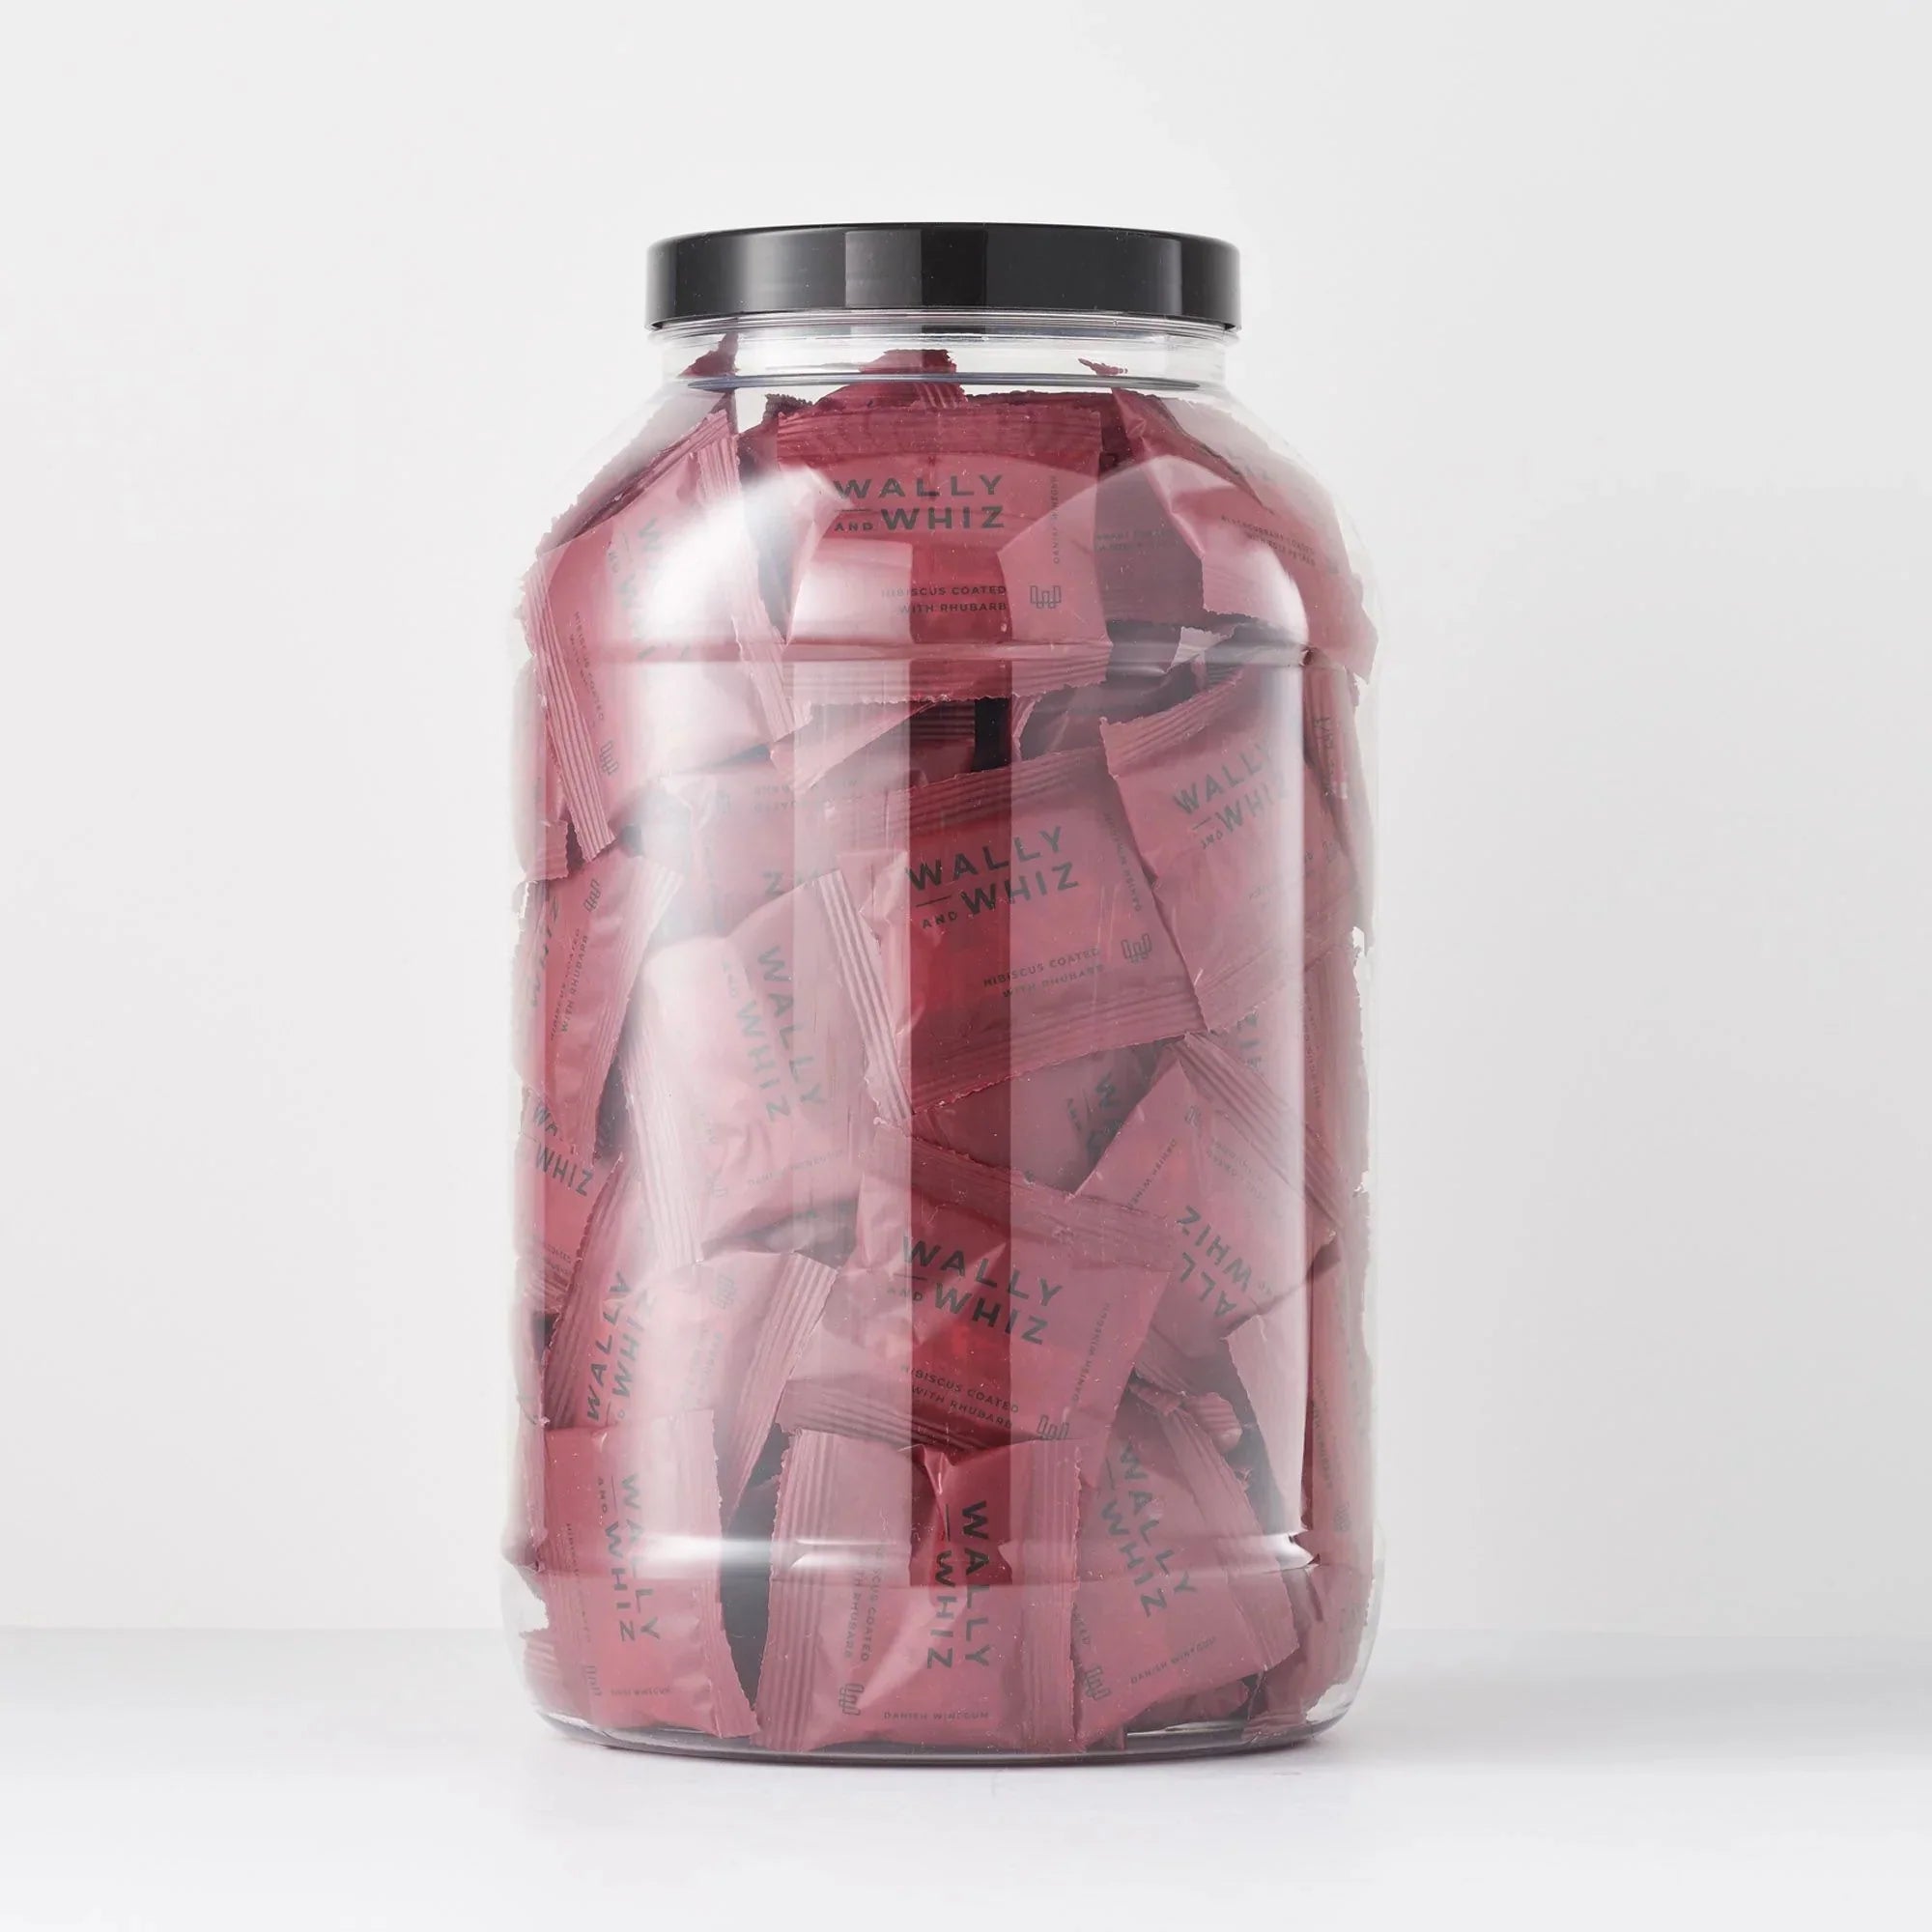 Wally e Whiz Wine Gum Jar con 125 fluss pacchi, ibisco con rabarbaro